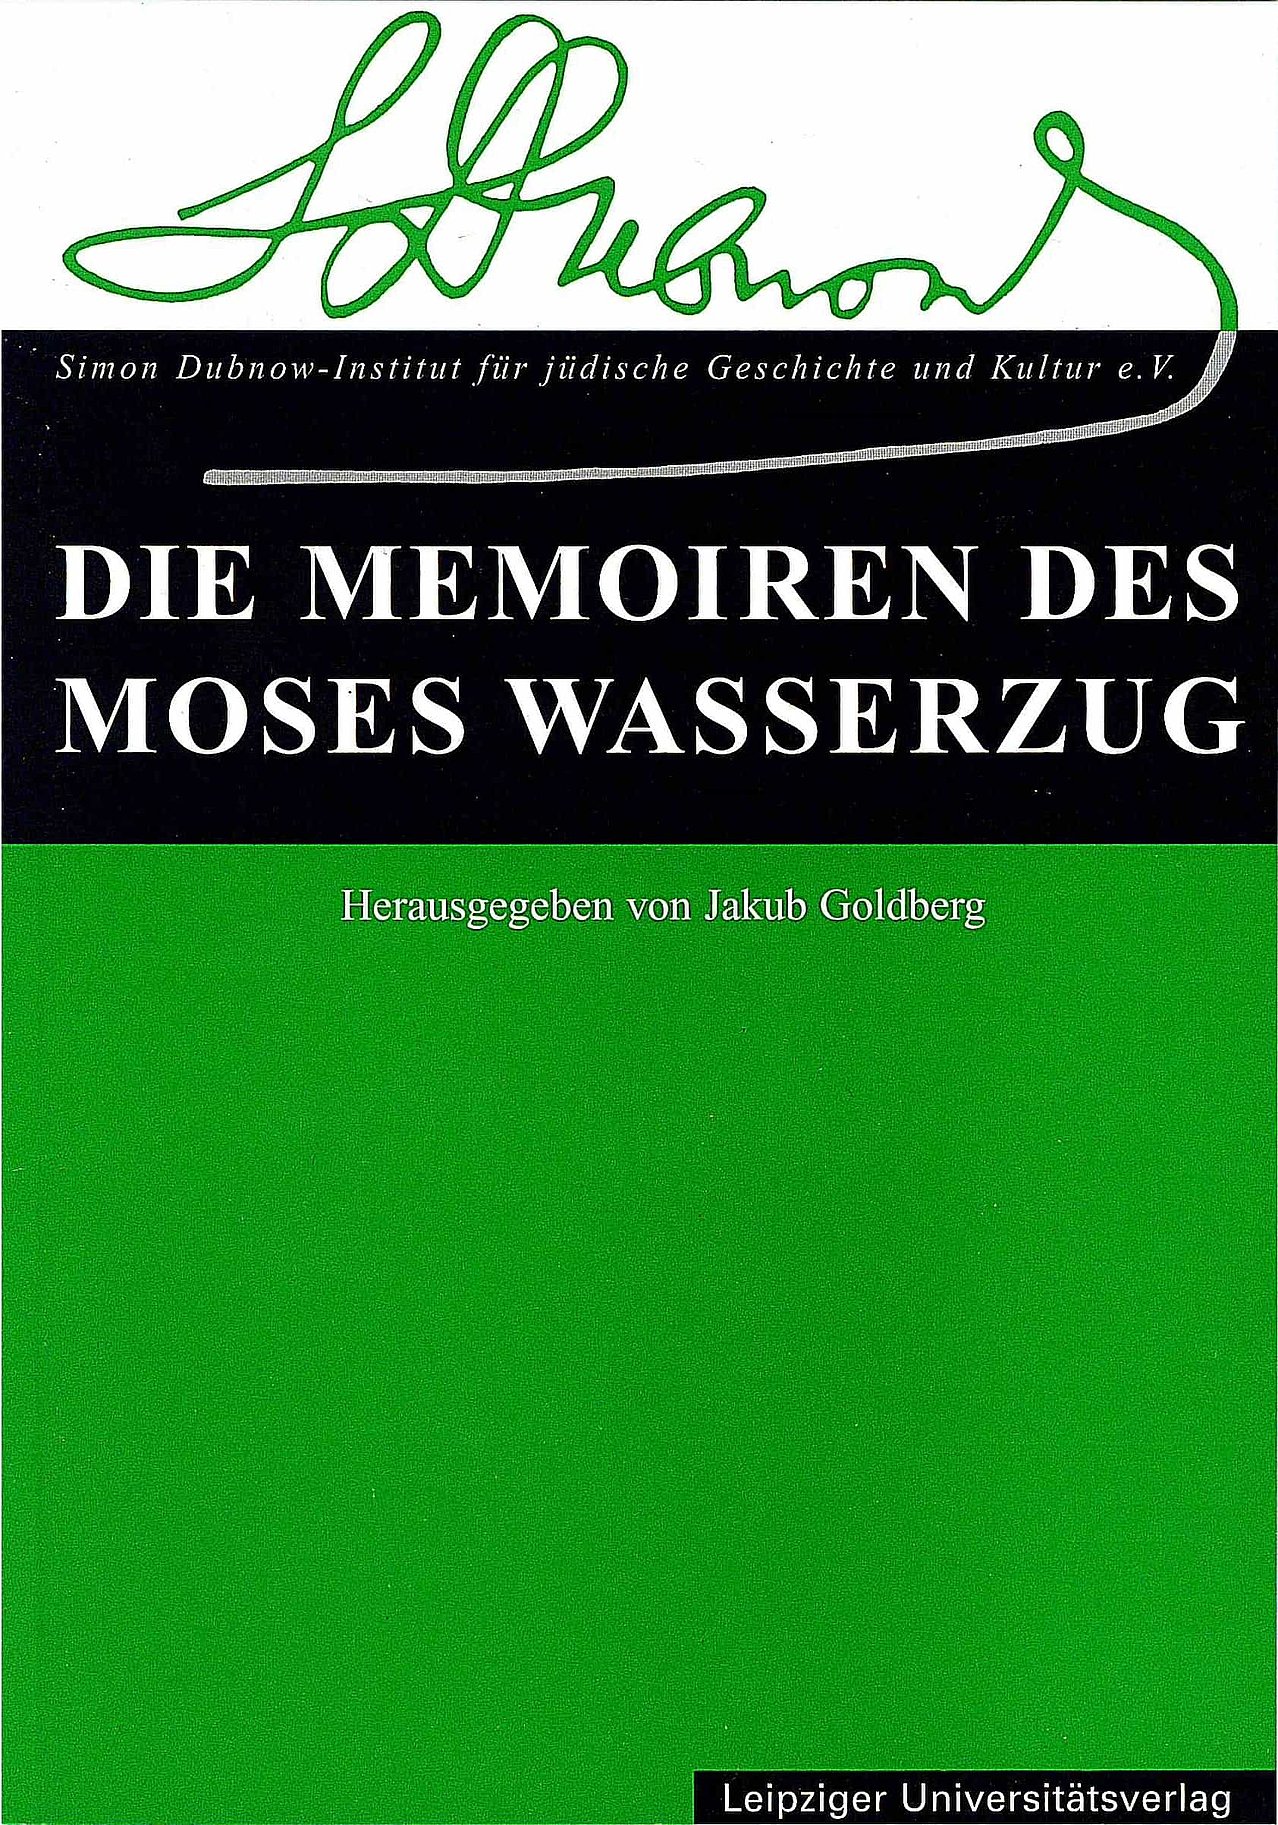 Publication, Die Memoiren des Moses Wasserzug, 2001